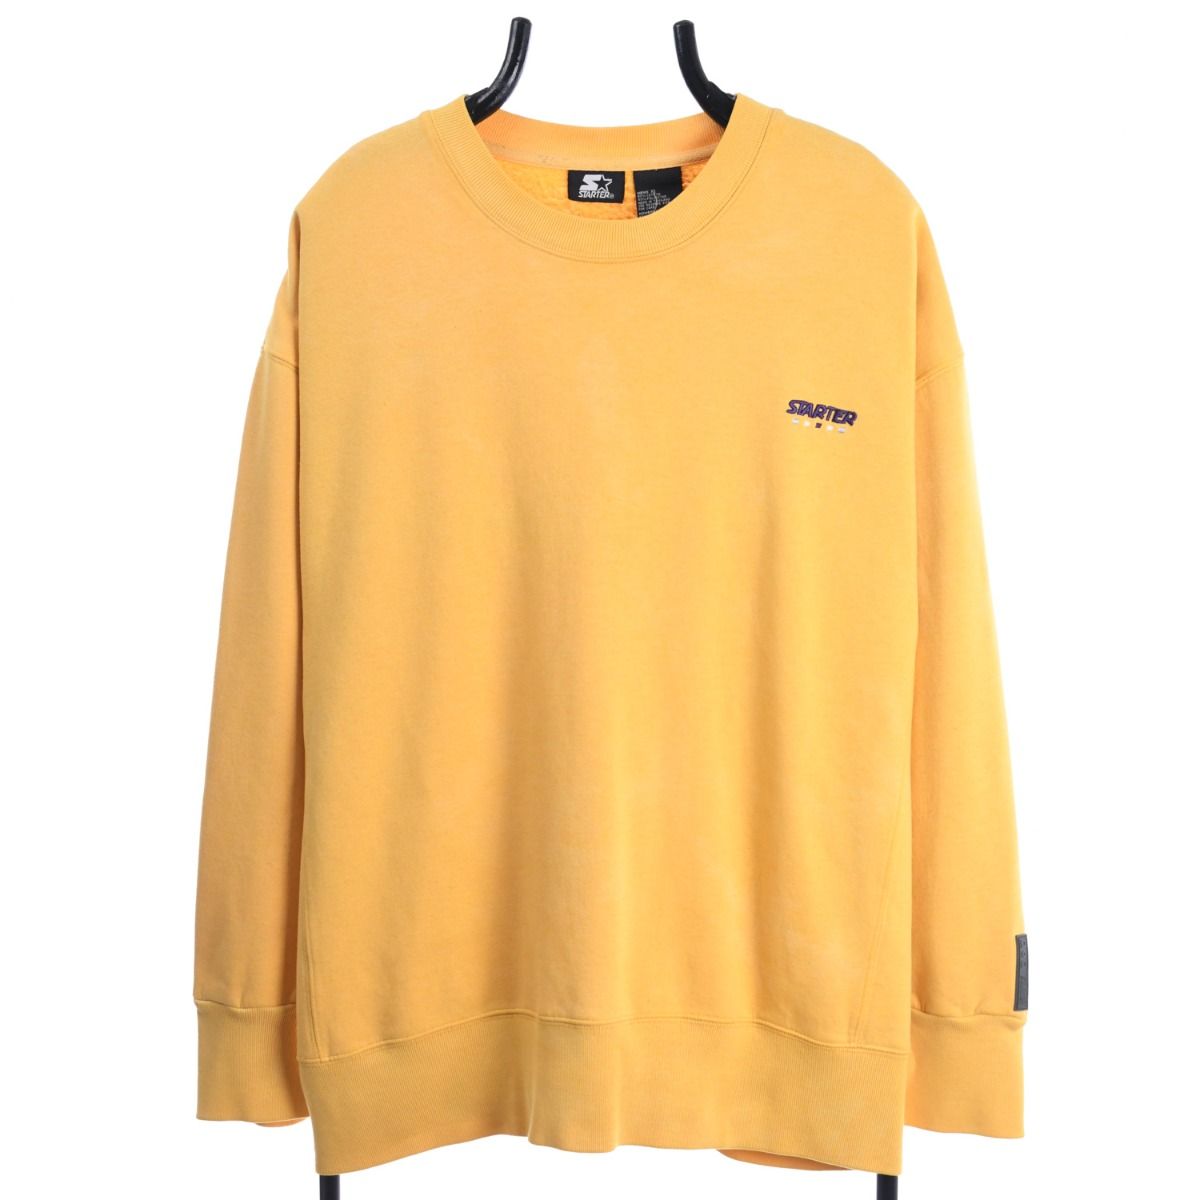 Starter 1990s Sweatshirt